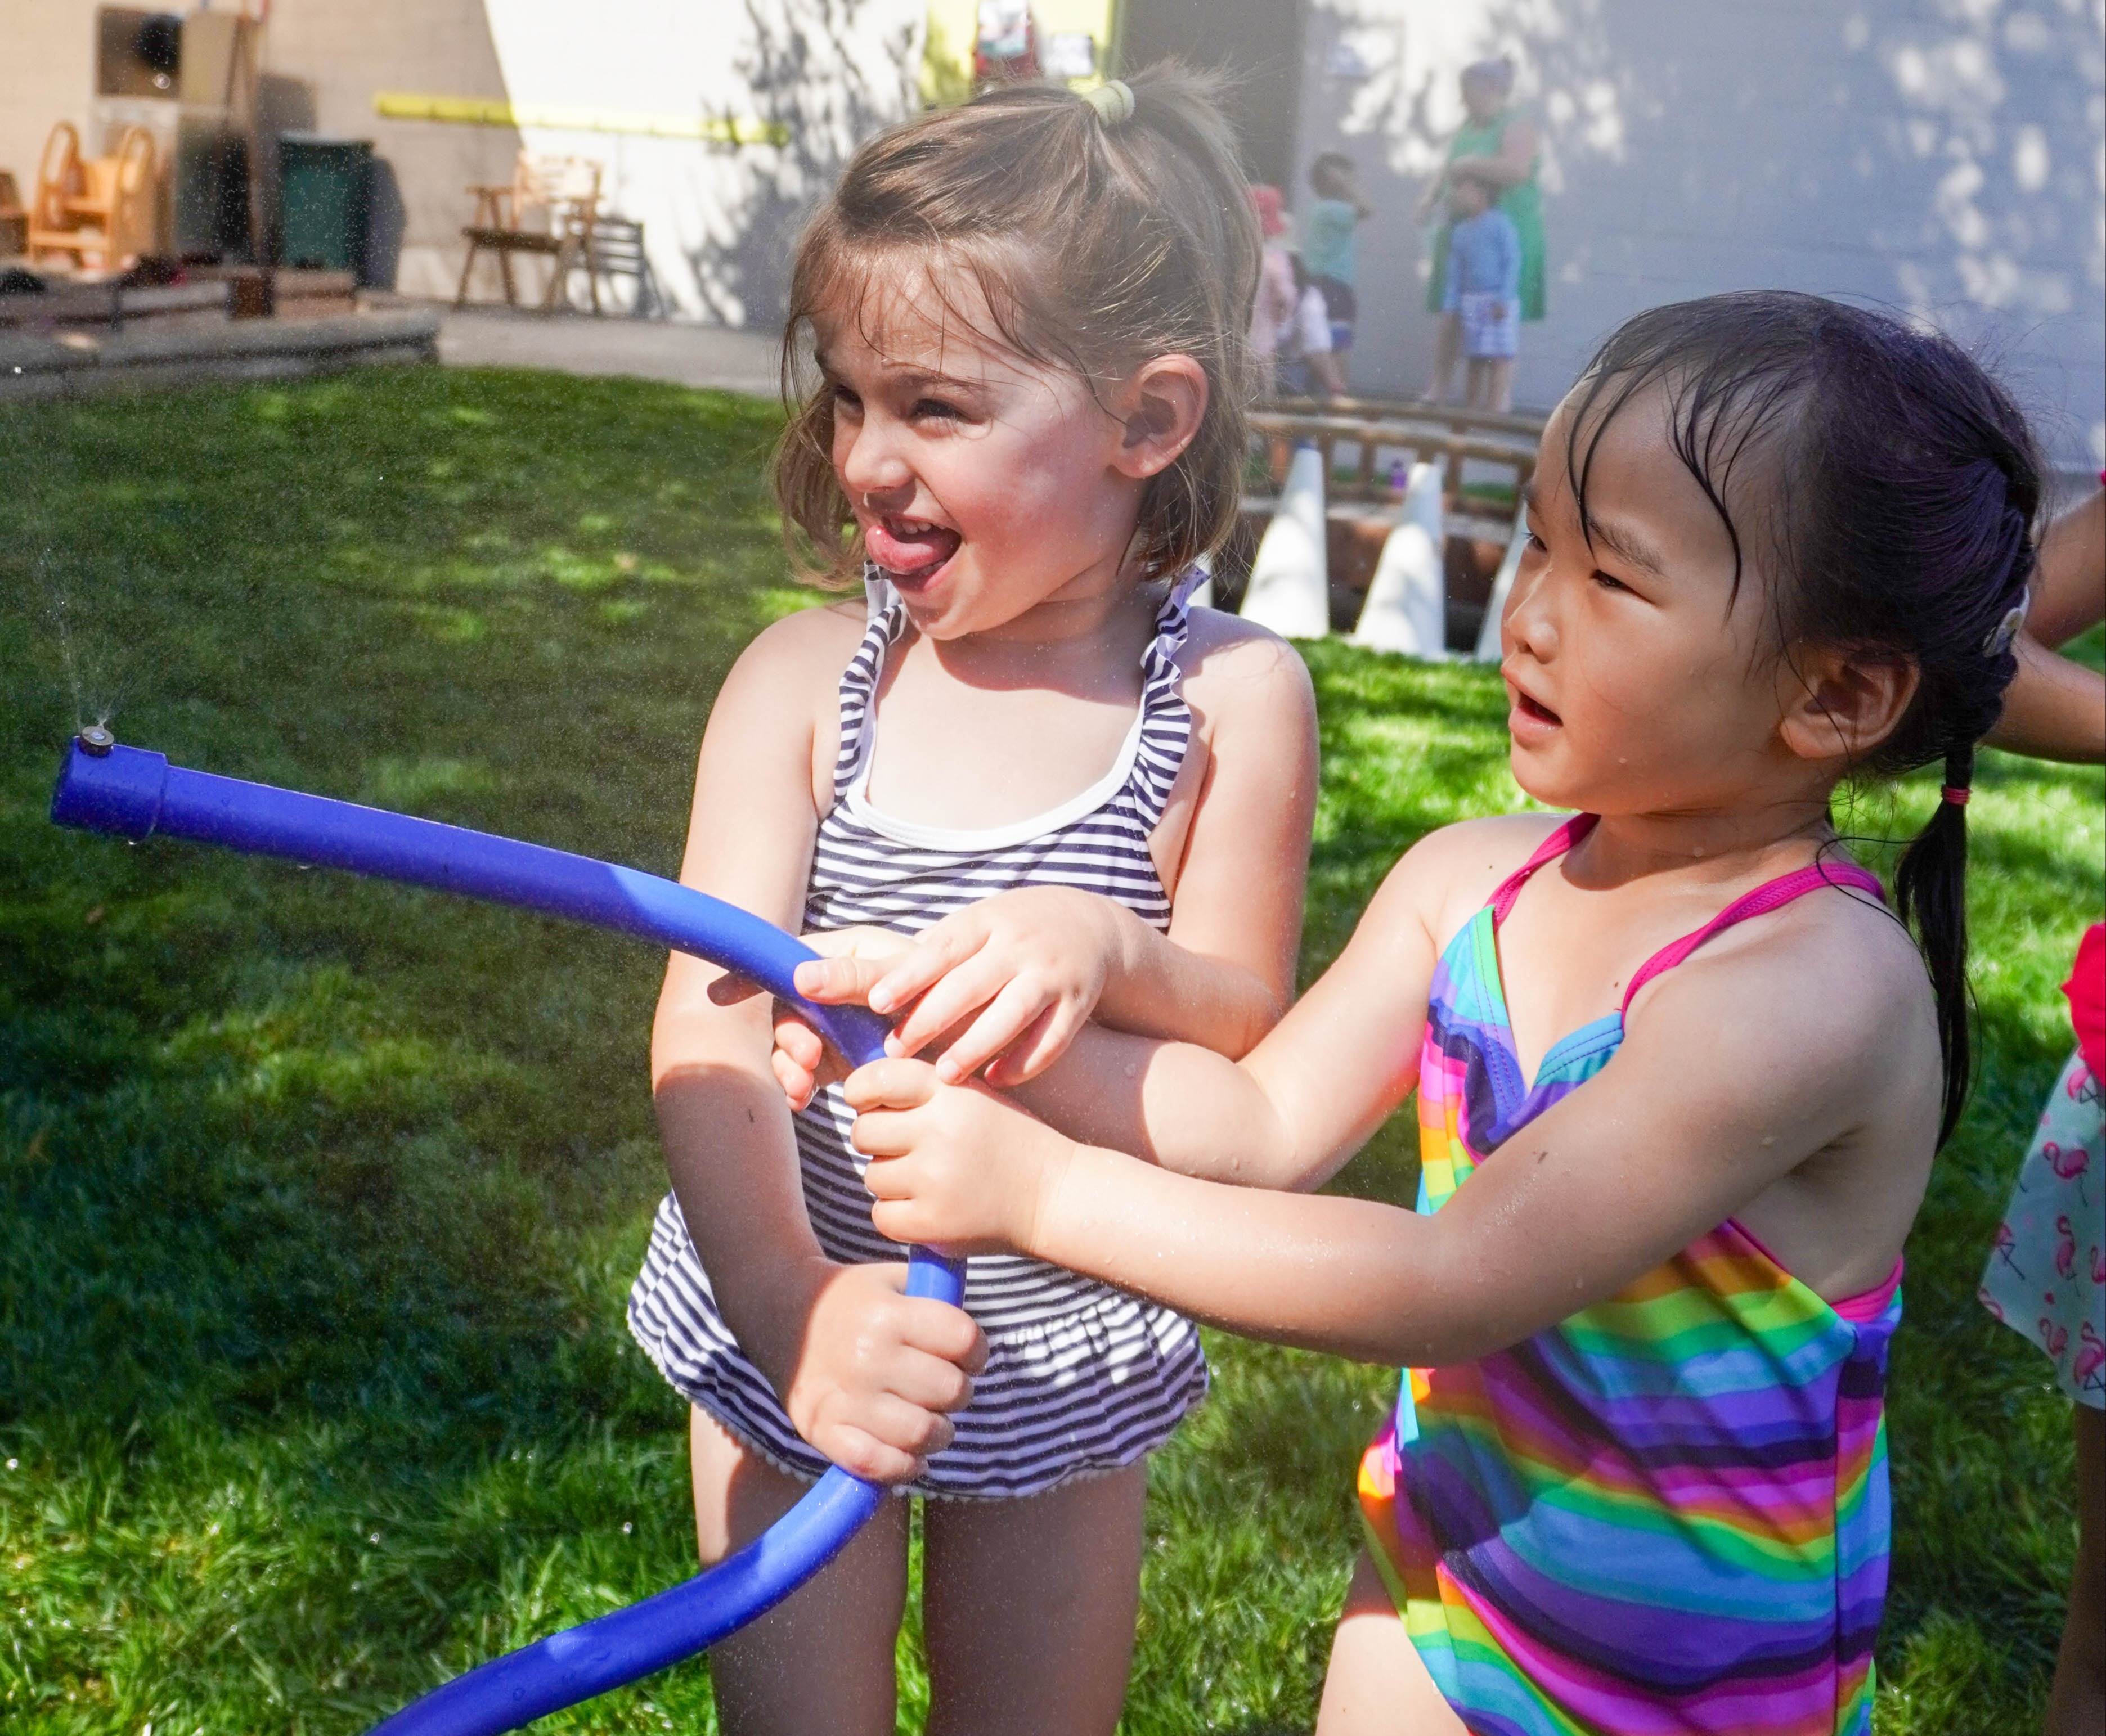 Sharing the sprinkler is part of children's social development